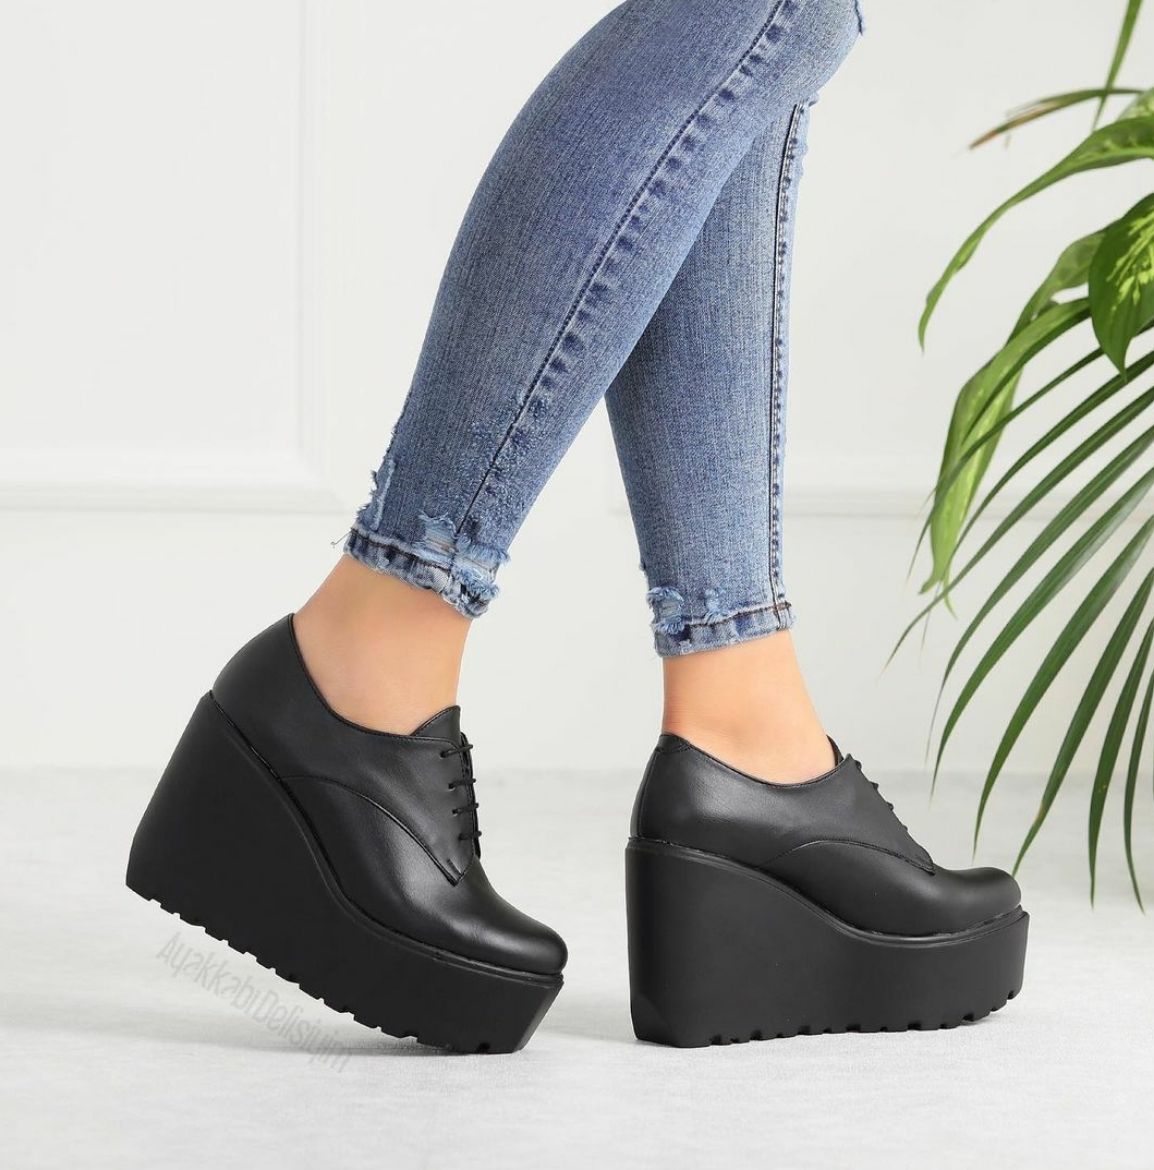 102 Dolgu Topuk 9 Cm Günlük Kadın Bot Ayakkabı  Siyah Deri resmi